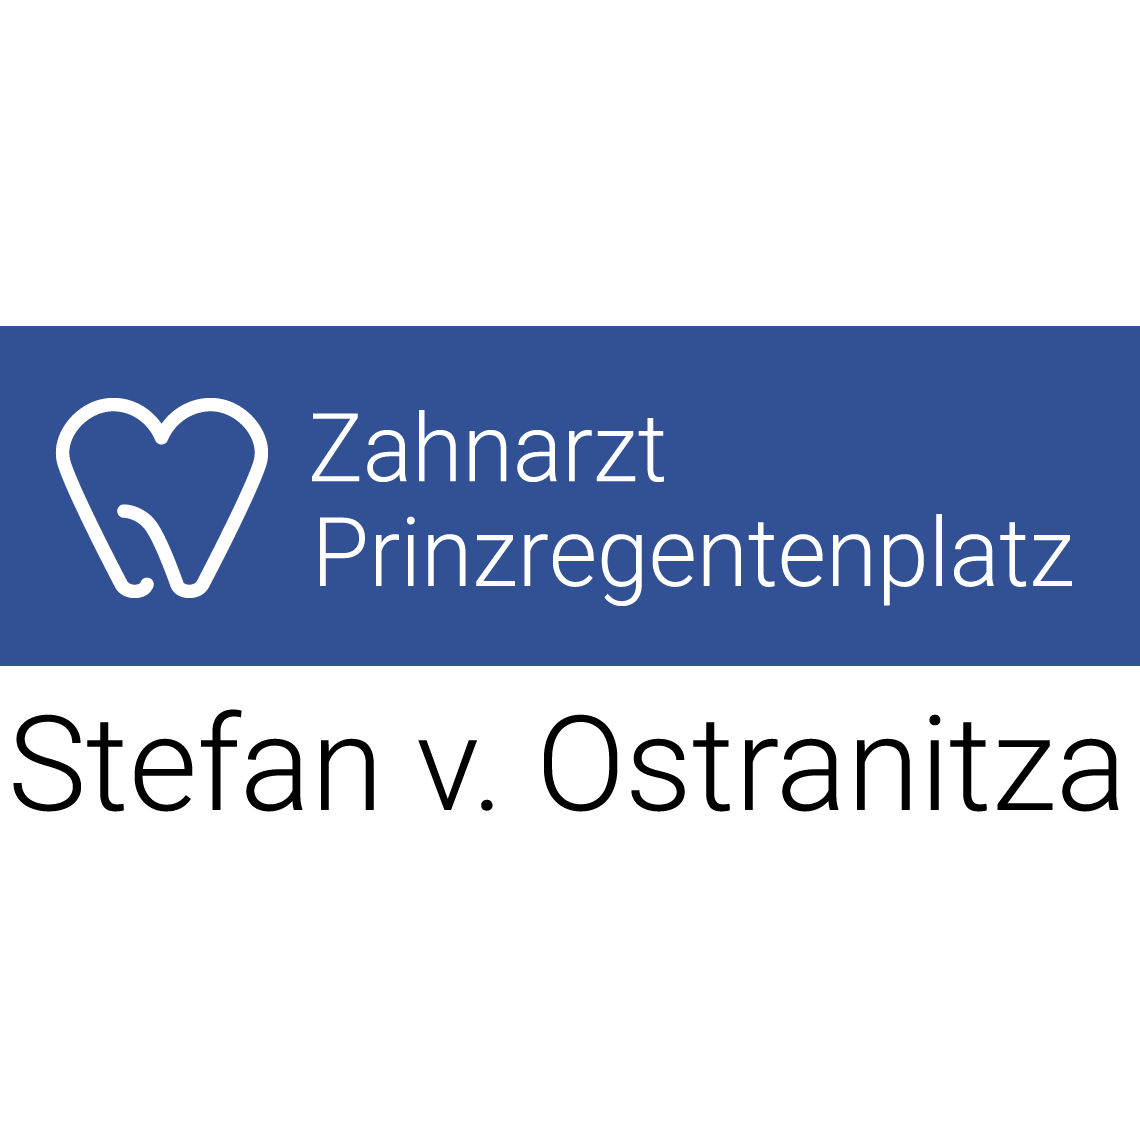 Zahnarztpraxis Stefan von Ostranitza |  Zahnarzt Zahnersatz Parodontologie | München - Haidhausen Logo